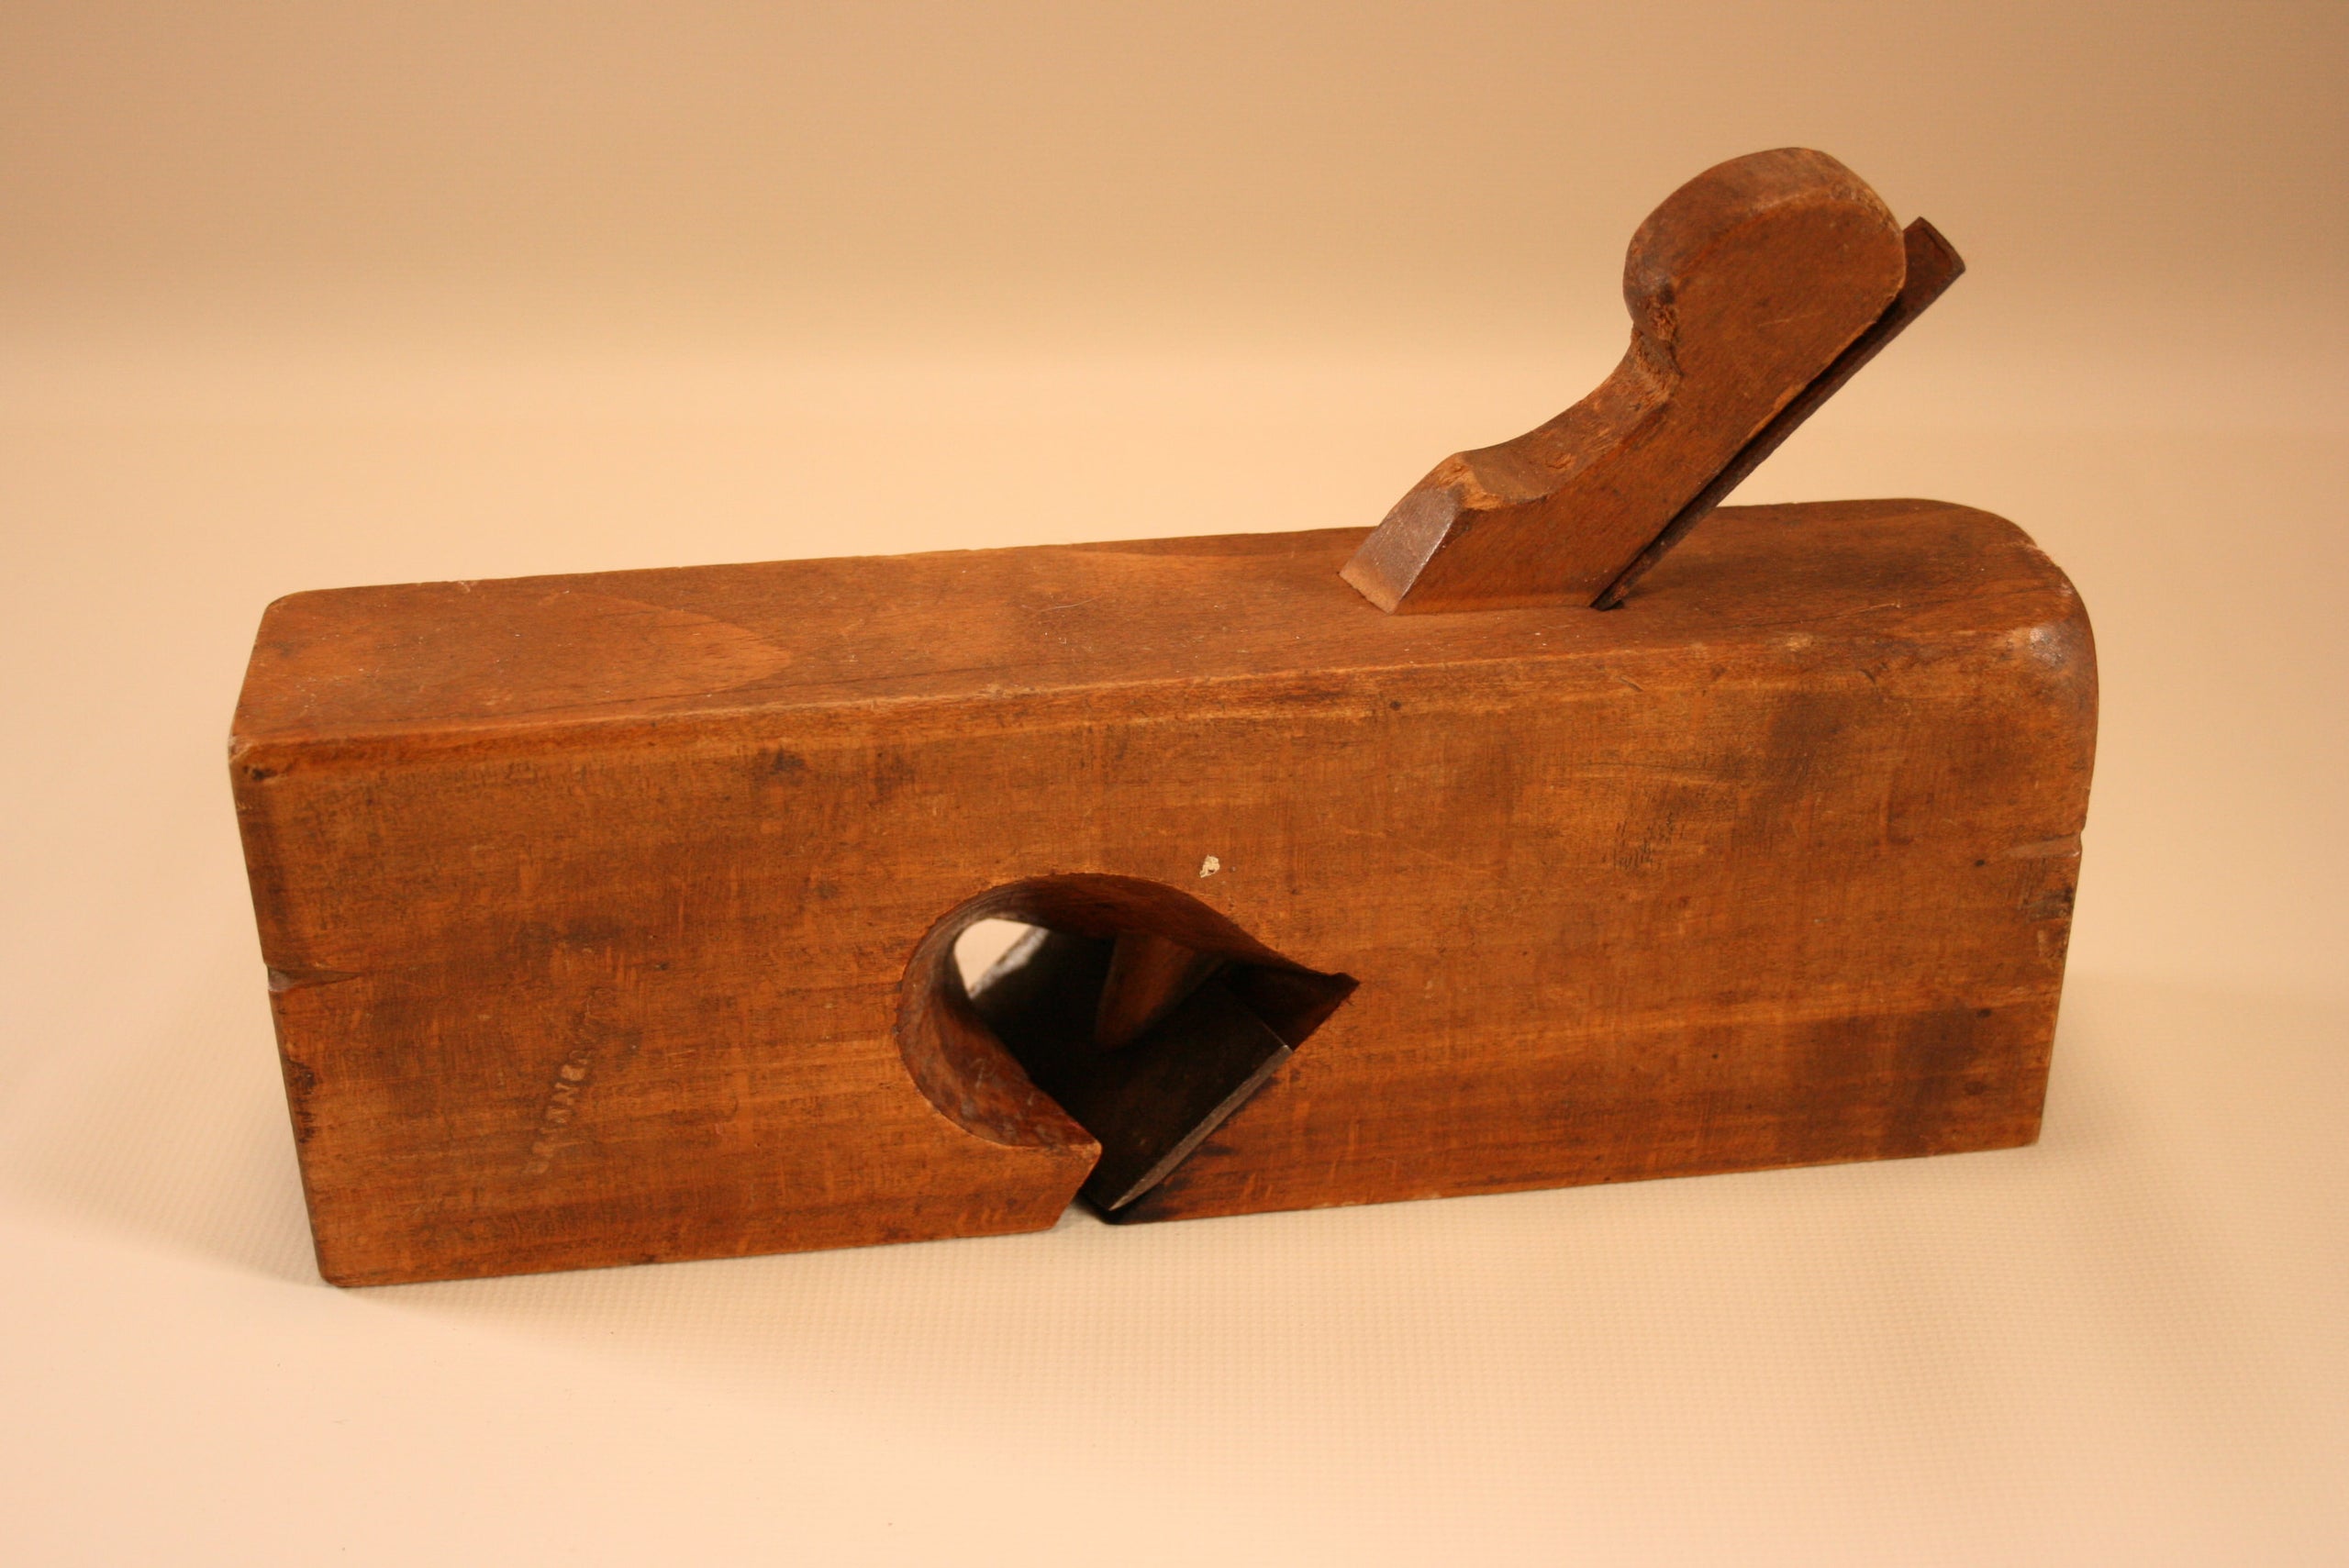 1-3-4-skewed-rabbet-plane-vintage-woodworking-tools